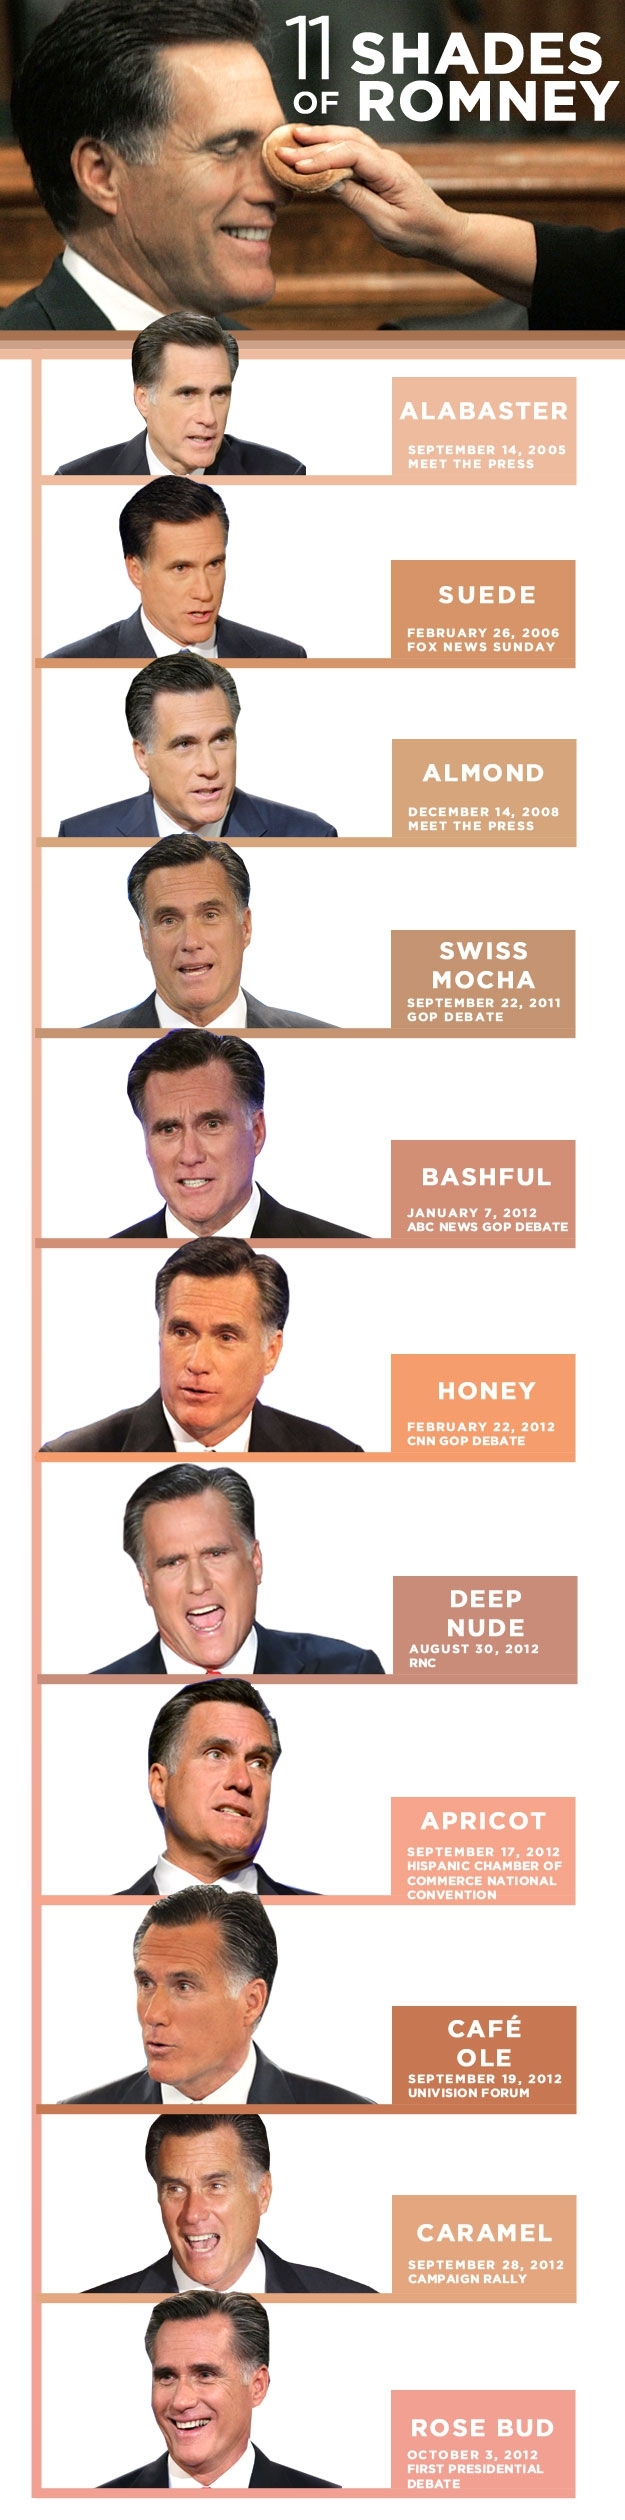 11 Shades Of Mitt Romney